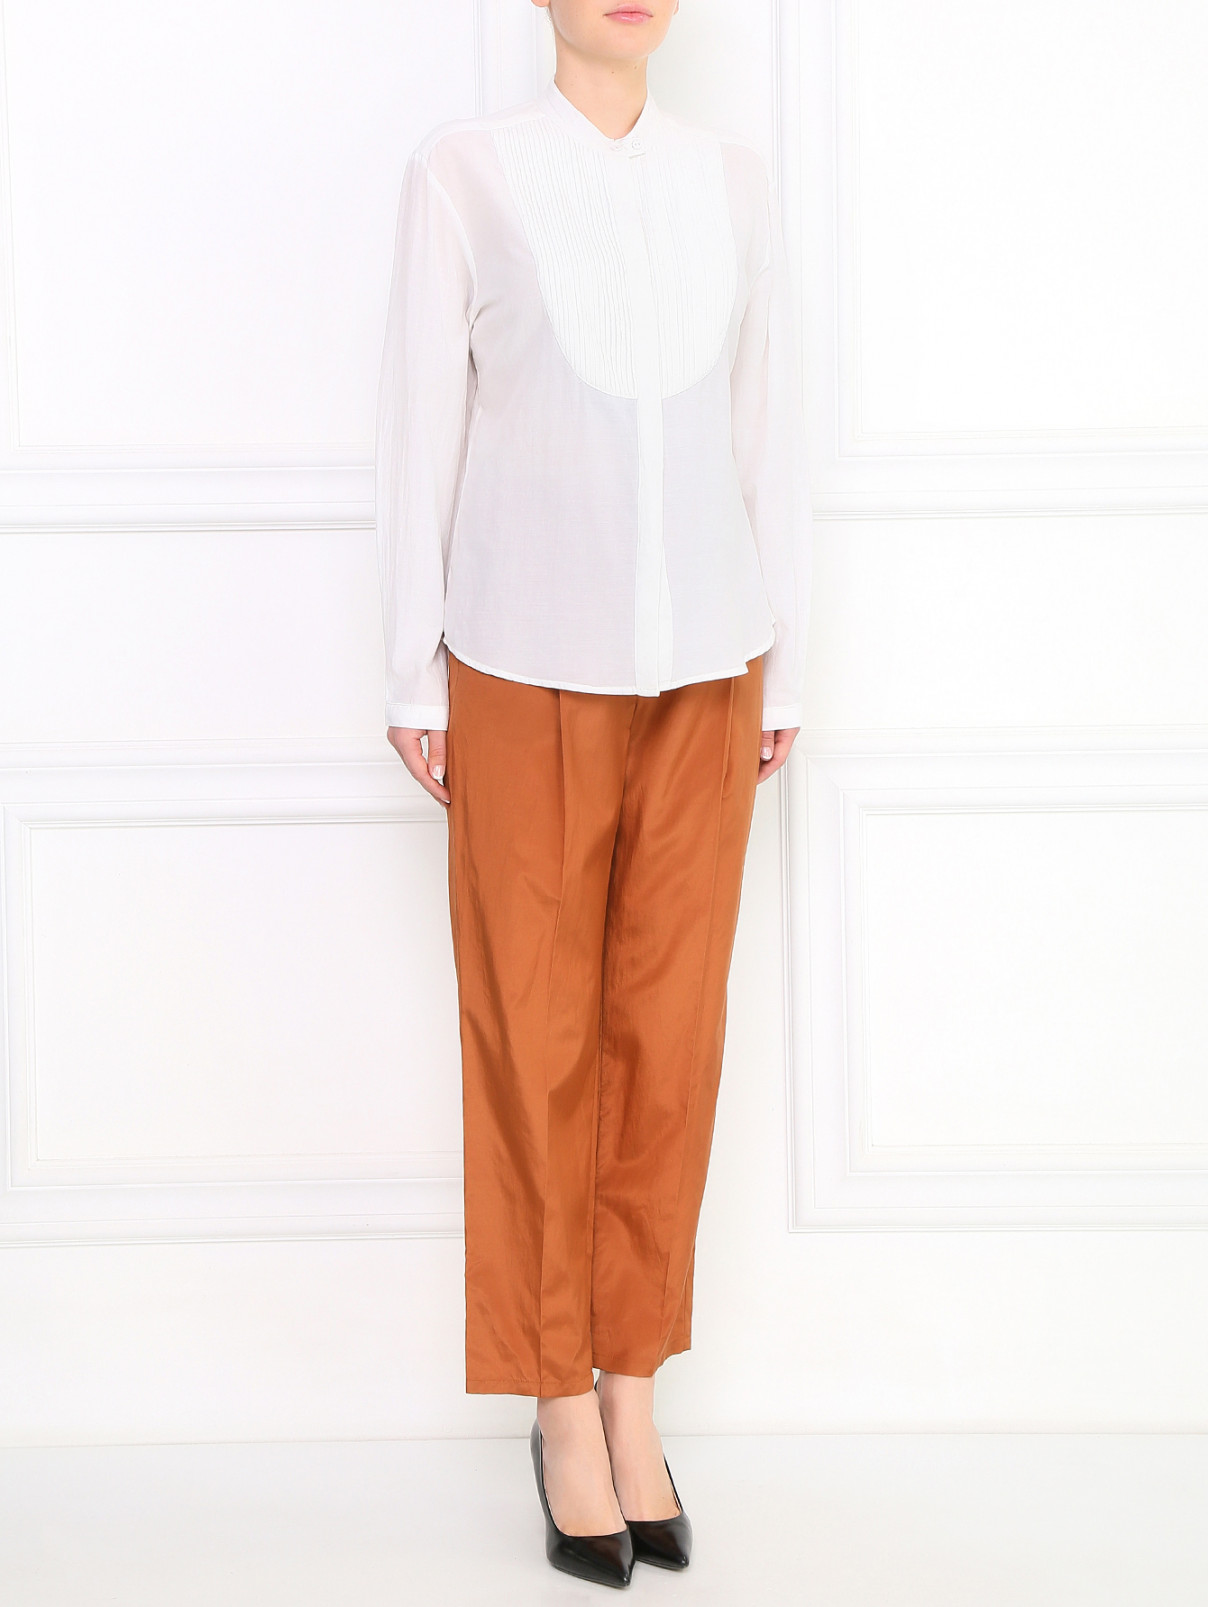 Блуза из хлопка с длинными рукавами Emporio Armani  –  Модель Общий вид  – Цвет:  Белый